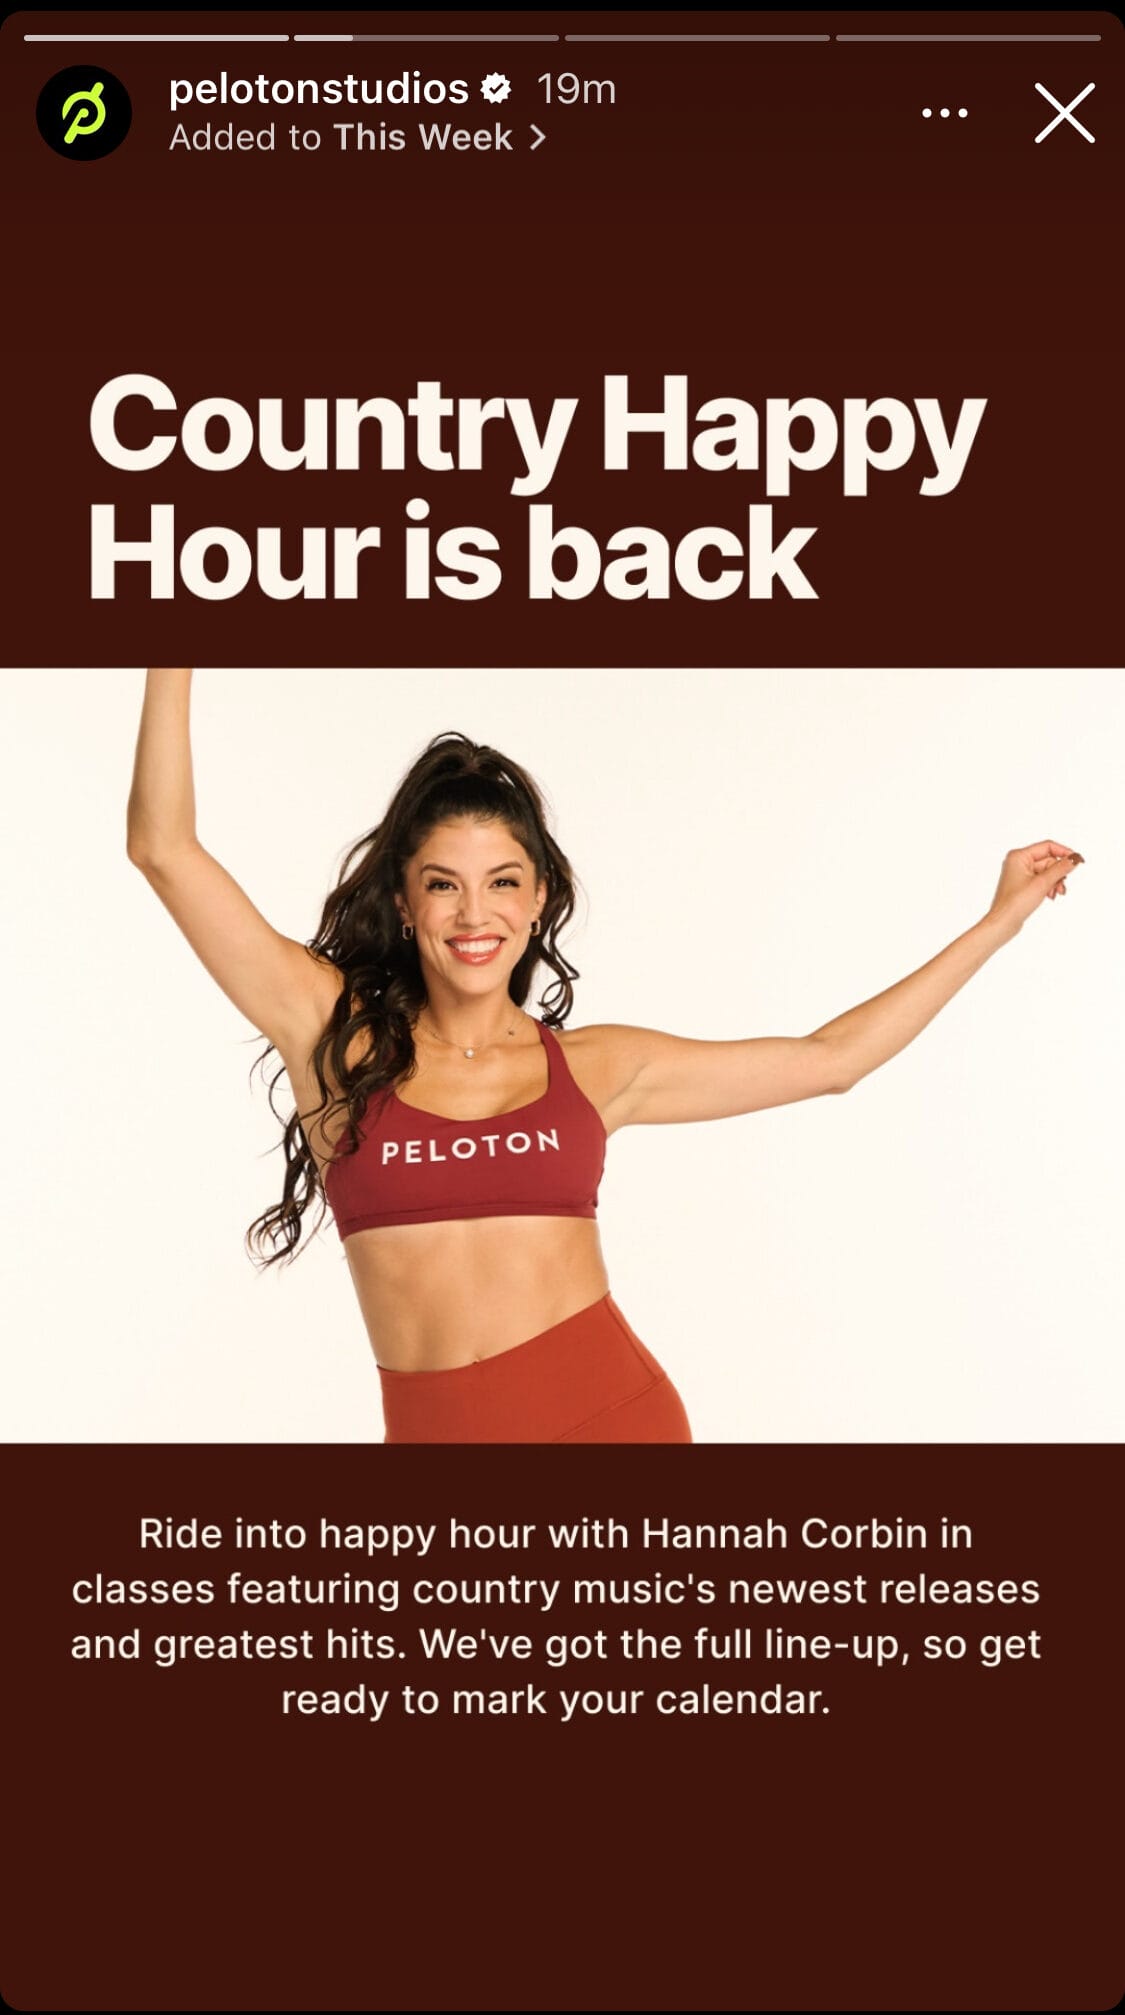 @PelotonStudios Instagram post announcing return of Country Happy Hour in 2024